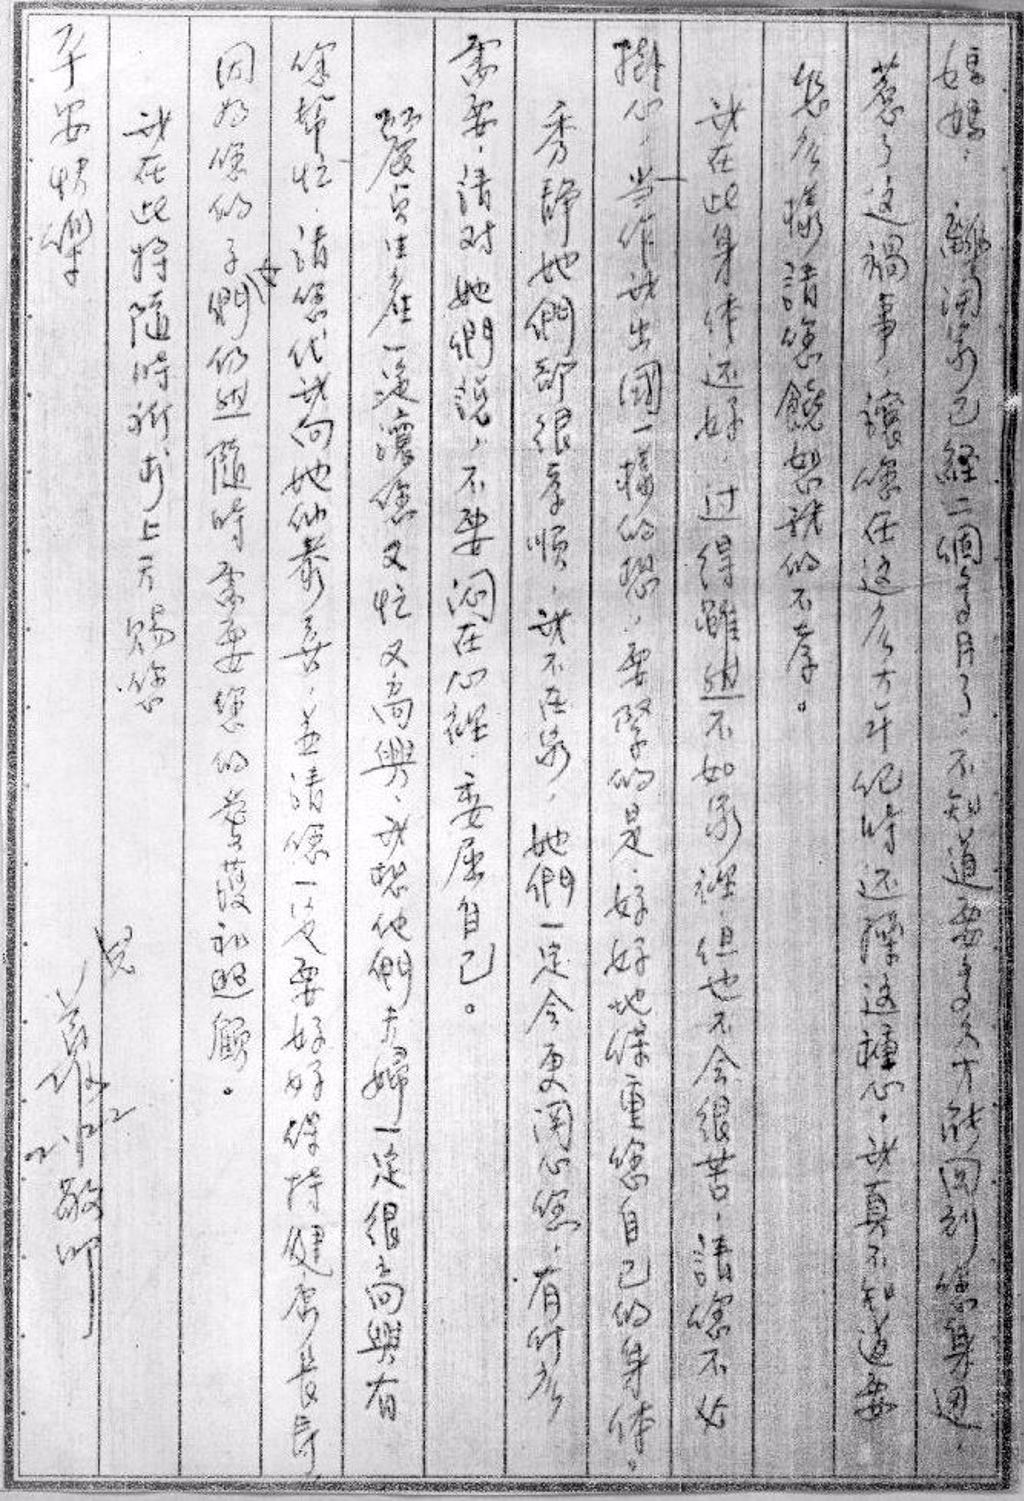 1980年2月28日發生林家滅門血案，林義雄於1980年2月22日在軍法處寫的一封信給他媽媽，但這封信還未寄出，他的母親遇害。1980年3月8日他在殯儀館親手將這封信焚化， 以慰其母在天之靈。（中時檔案照）